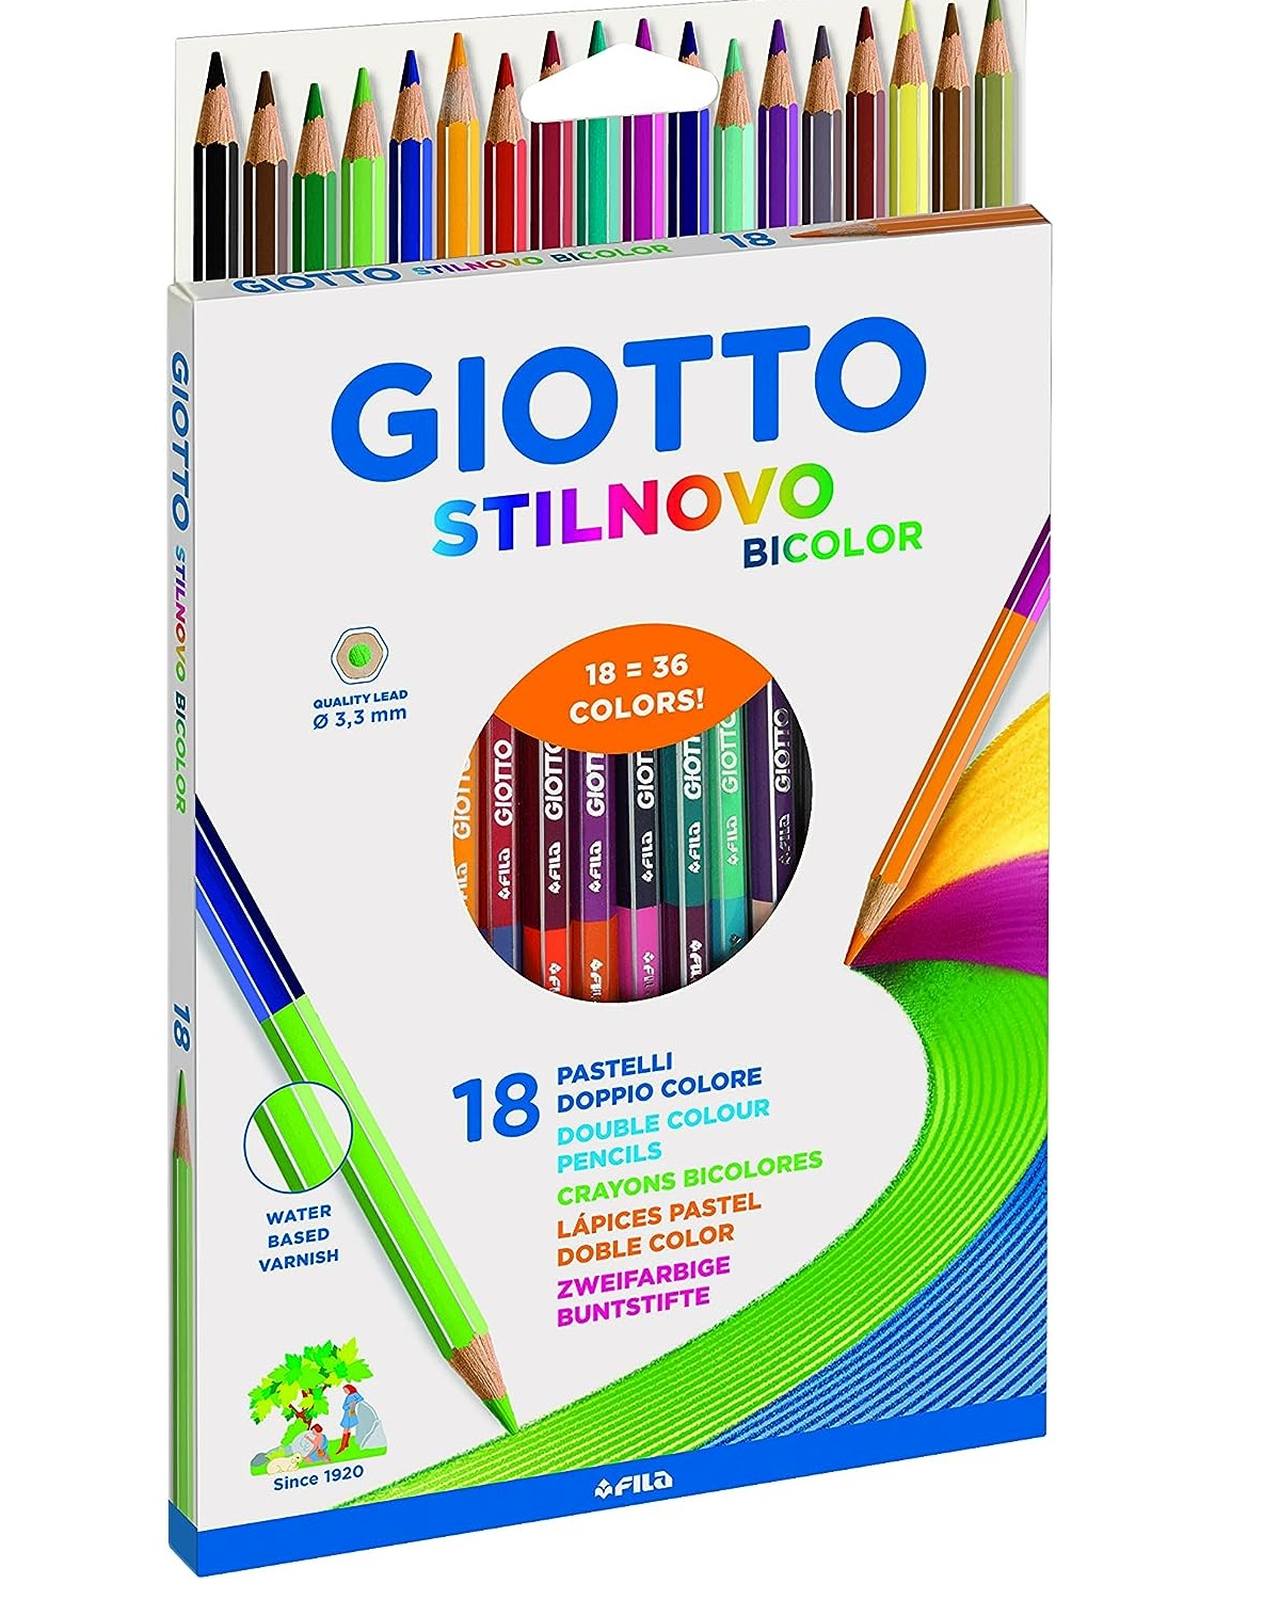 Giotto Stilnovo Bicolor pastello bicolor in un astuccio da 18